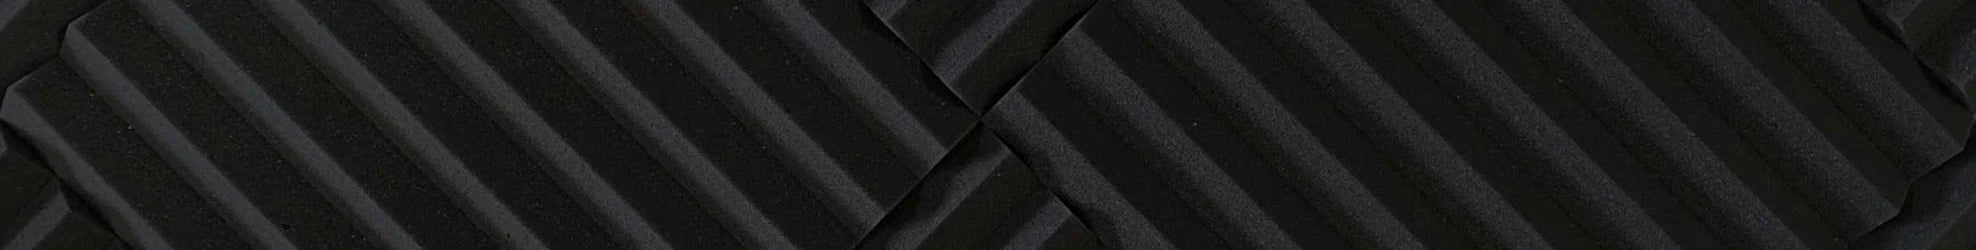 Advanced Acoustics Wedge Acoustic Foam Tiles